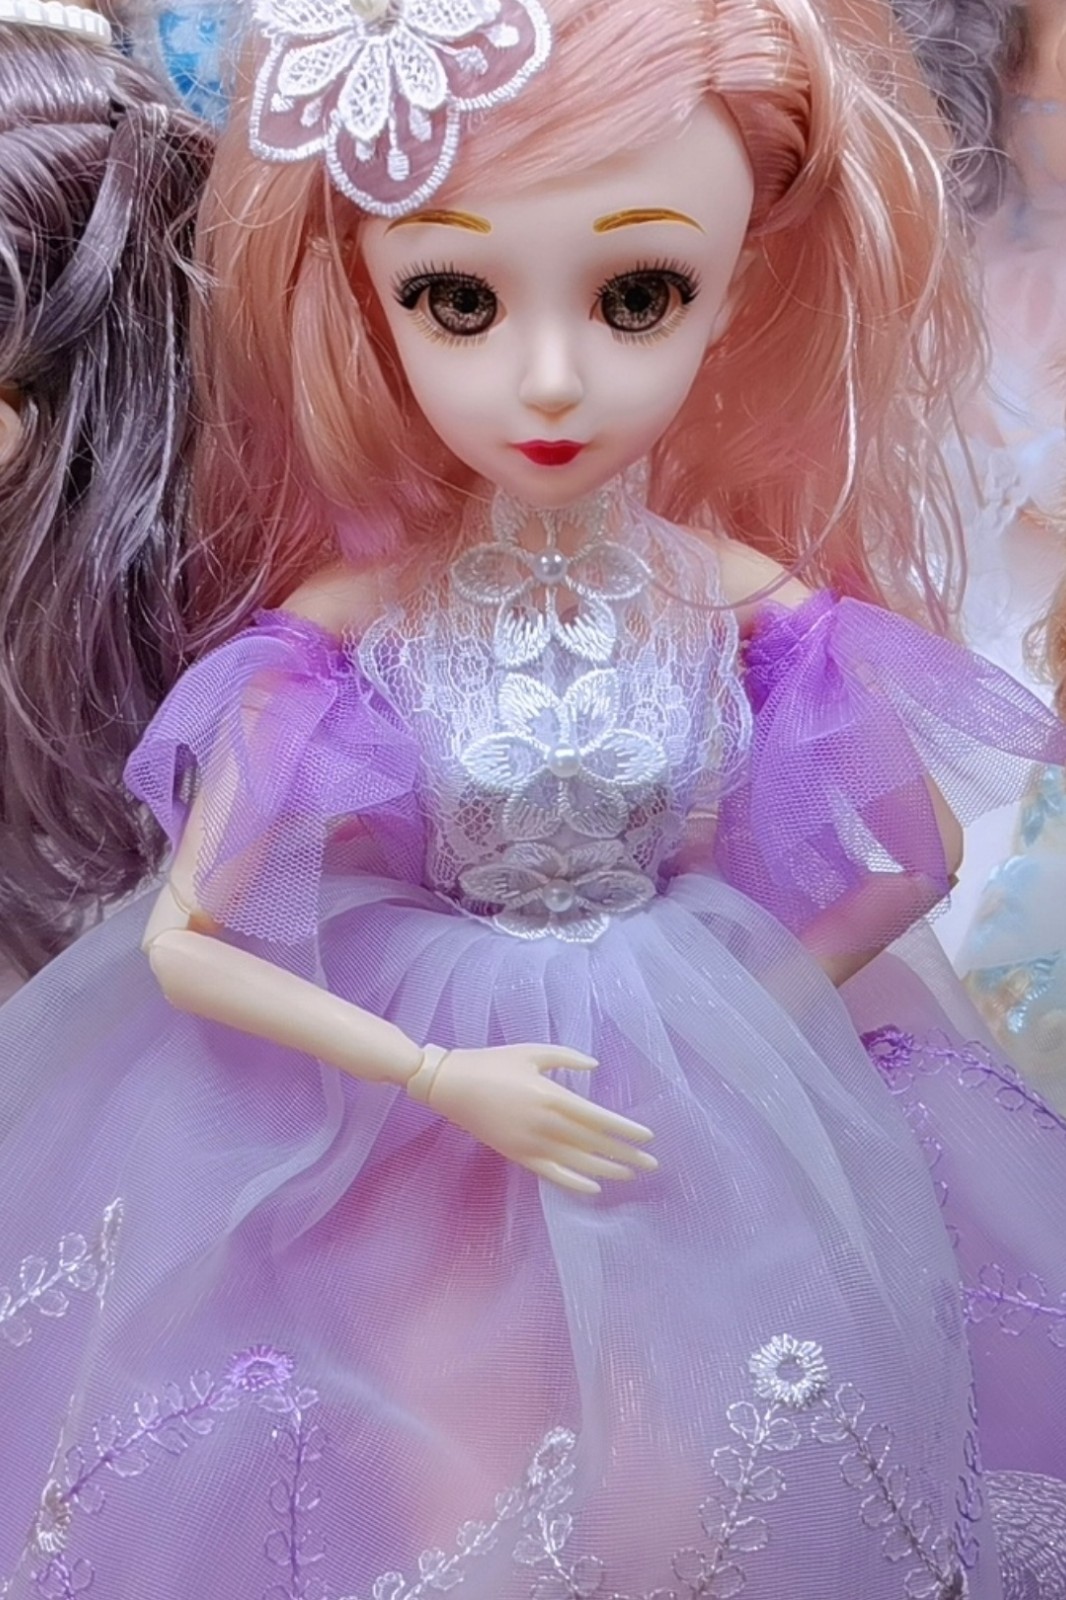 义乌市志刚玩具商行批发销售新机缘芭比洋娃娃，音乐娃娃、钥匙扣娃娃等产品